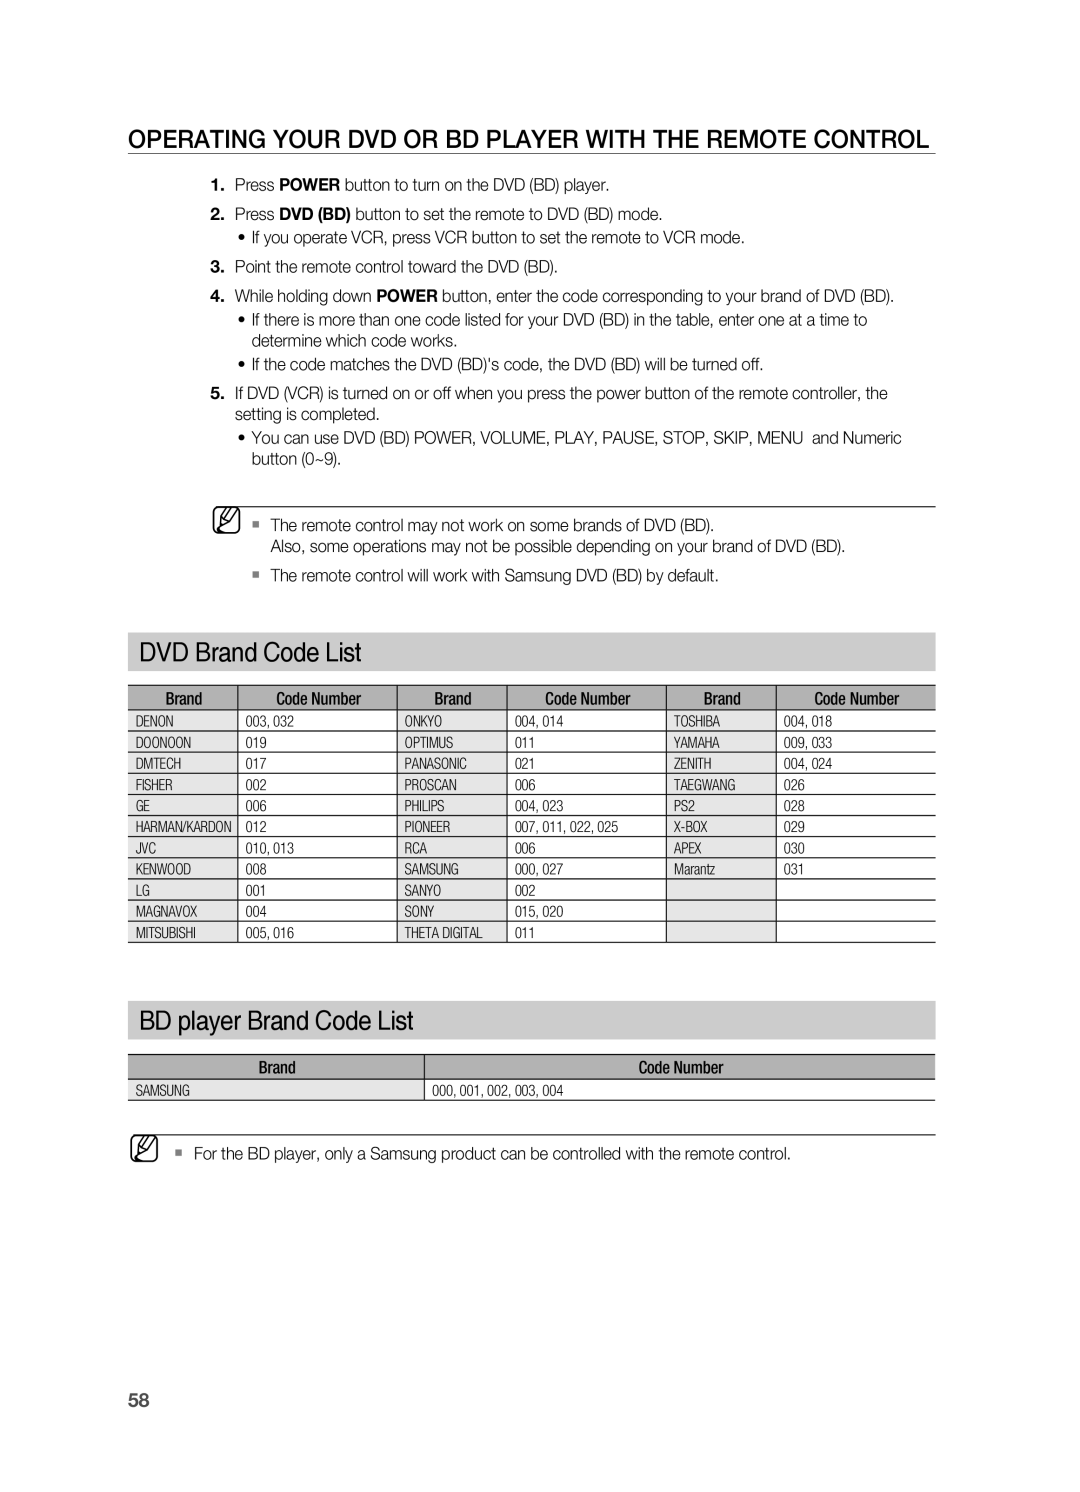 Samsung HT-AS730ST user manual DVD Brand Code List, BD player Brand Code List 